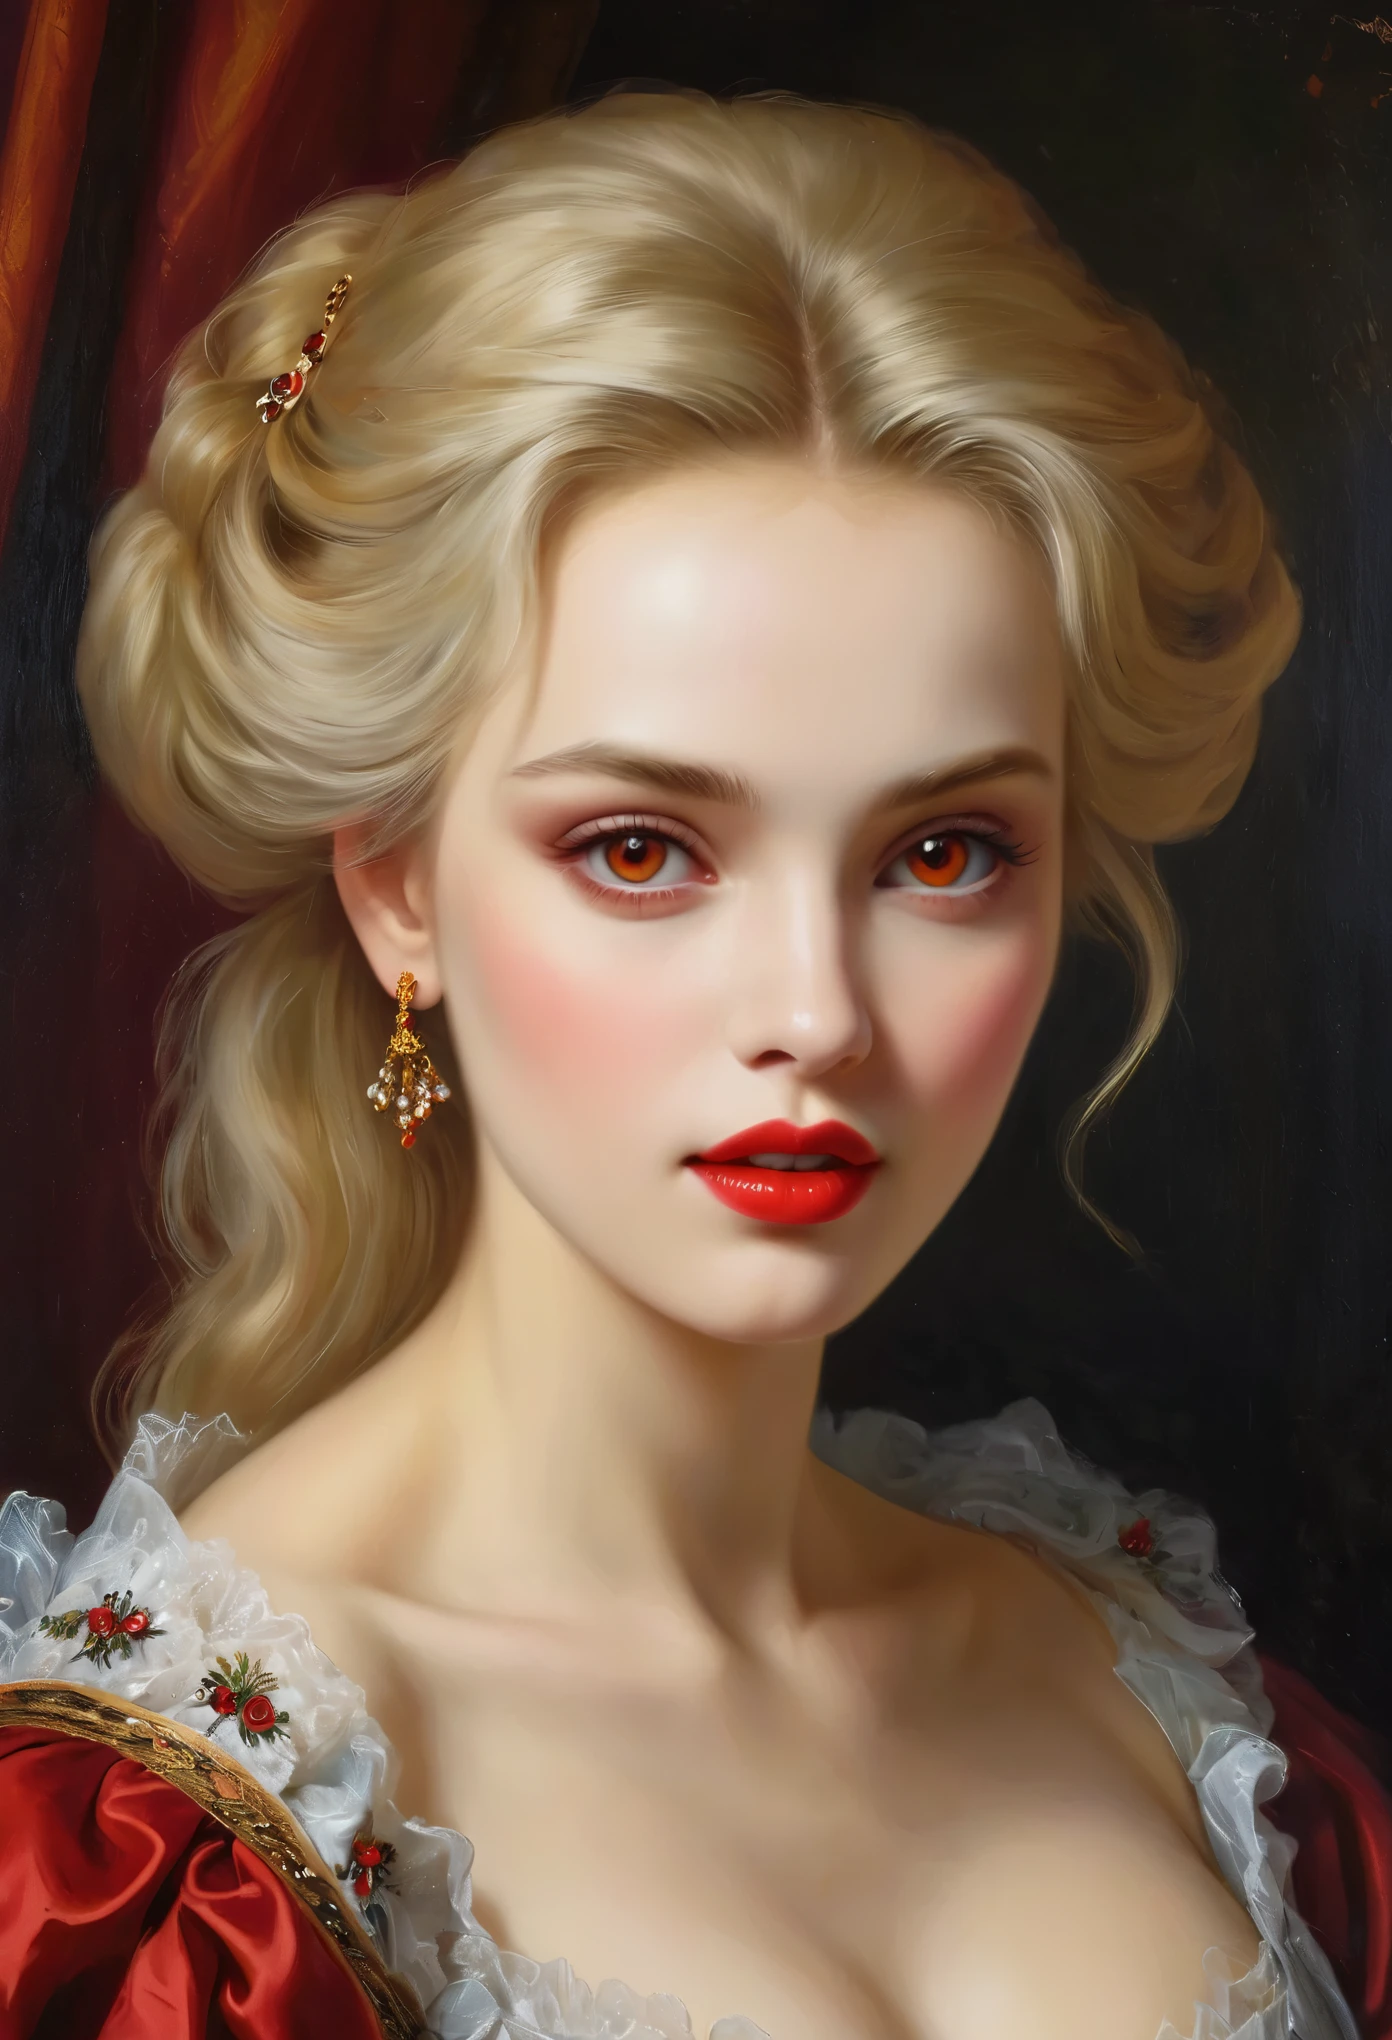 (高解析度,傑作:1.2),(實際的:1.37)18世紀俄羅斯吸血鬼女孩的肖像，無與倫比的美麗. 她有著迷人的紅眼和精緻的紅唇. 長獠牙, 這幅肖像畫的每個細節都經過精心繪製., 捕捉她特徵的細微差別. 她穿著一件漂亮的絲綢禮服, 飾有複雜的蕾絲和精緻的刺繡. 這幅畫講述了那個時代的奢華., 背景中的豪華天鵝絨窗簾和金色家具. 燈光柔和且擴散, 突出女孩&#39;的優雅美麗. 色彩鲜艳丰富, 創造引人注目的視覺體驗. (這幅肖像畫採用古典肖像風格:1.5), 讓人想起當時著名藝術家的作品. 它散發著優雅的氣息, 優雅, 複雜性. 尖銳的長爪, (深紅色的眼睛:1.4), 火紅色的眼睛, (從他嘴唇之間的縫隙中可以看到鋒利的獠牙:1.8), (脖子上有一個咬痕:1.5),.２有兩個洞